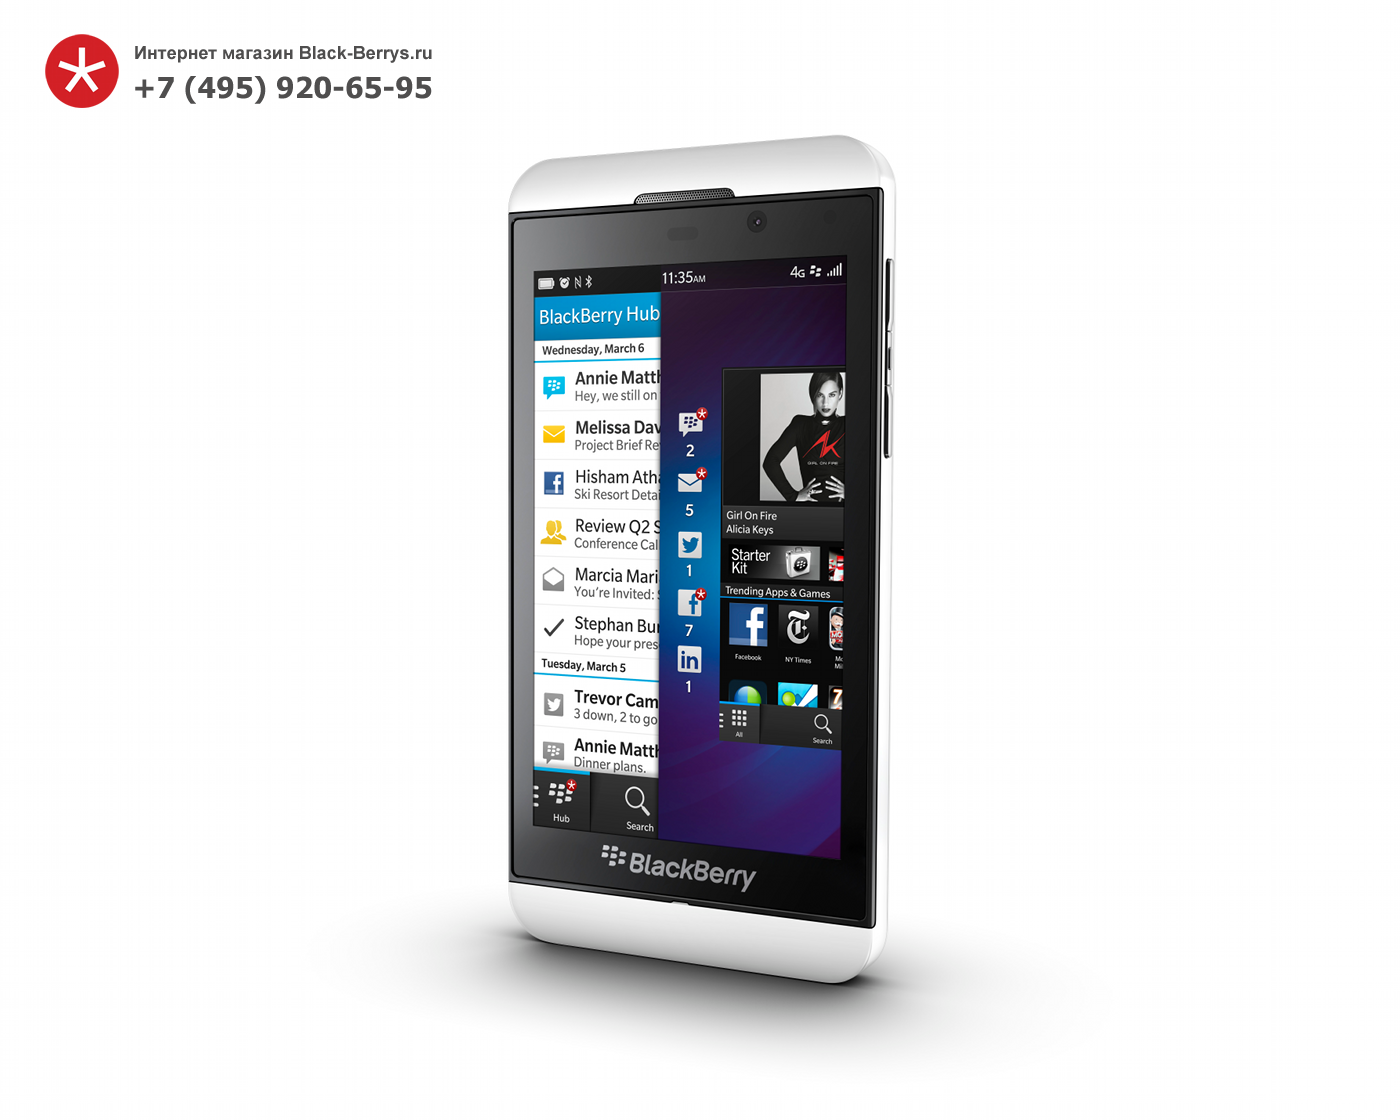 BlackBerry Z10 White 3G + 4G (LTE)